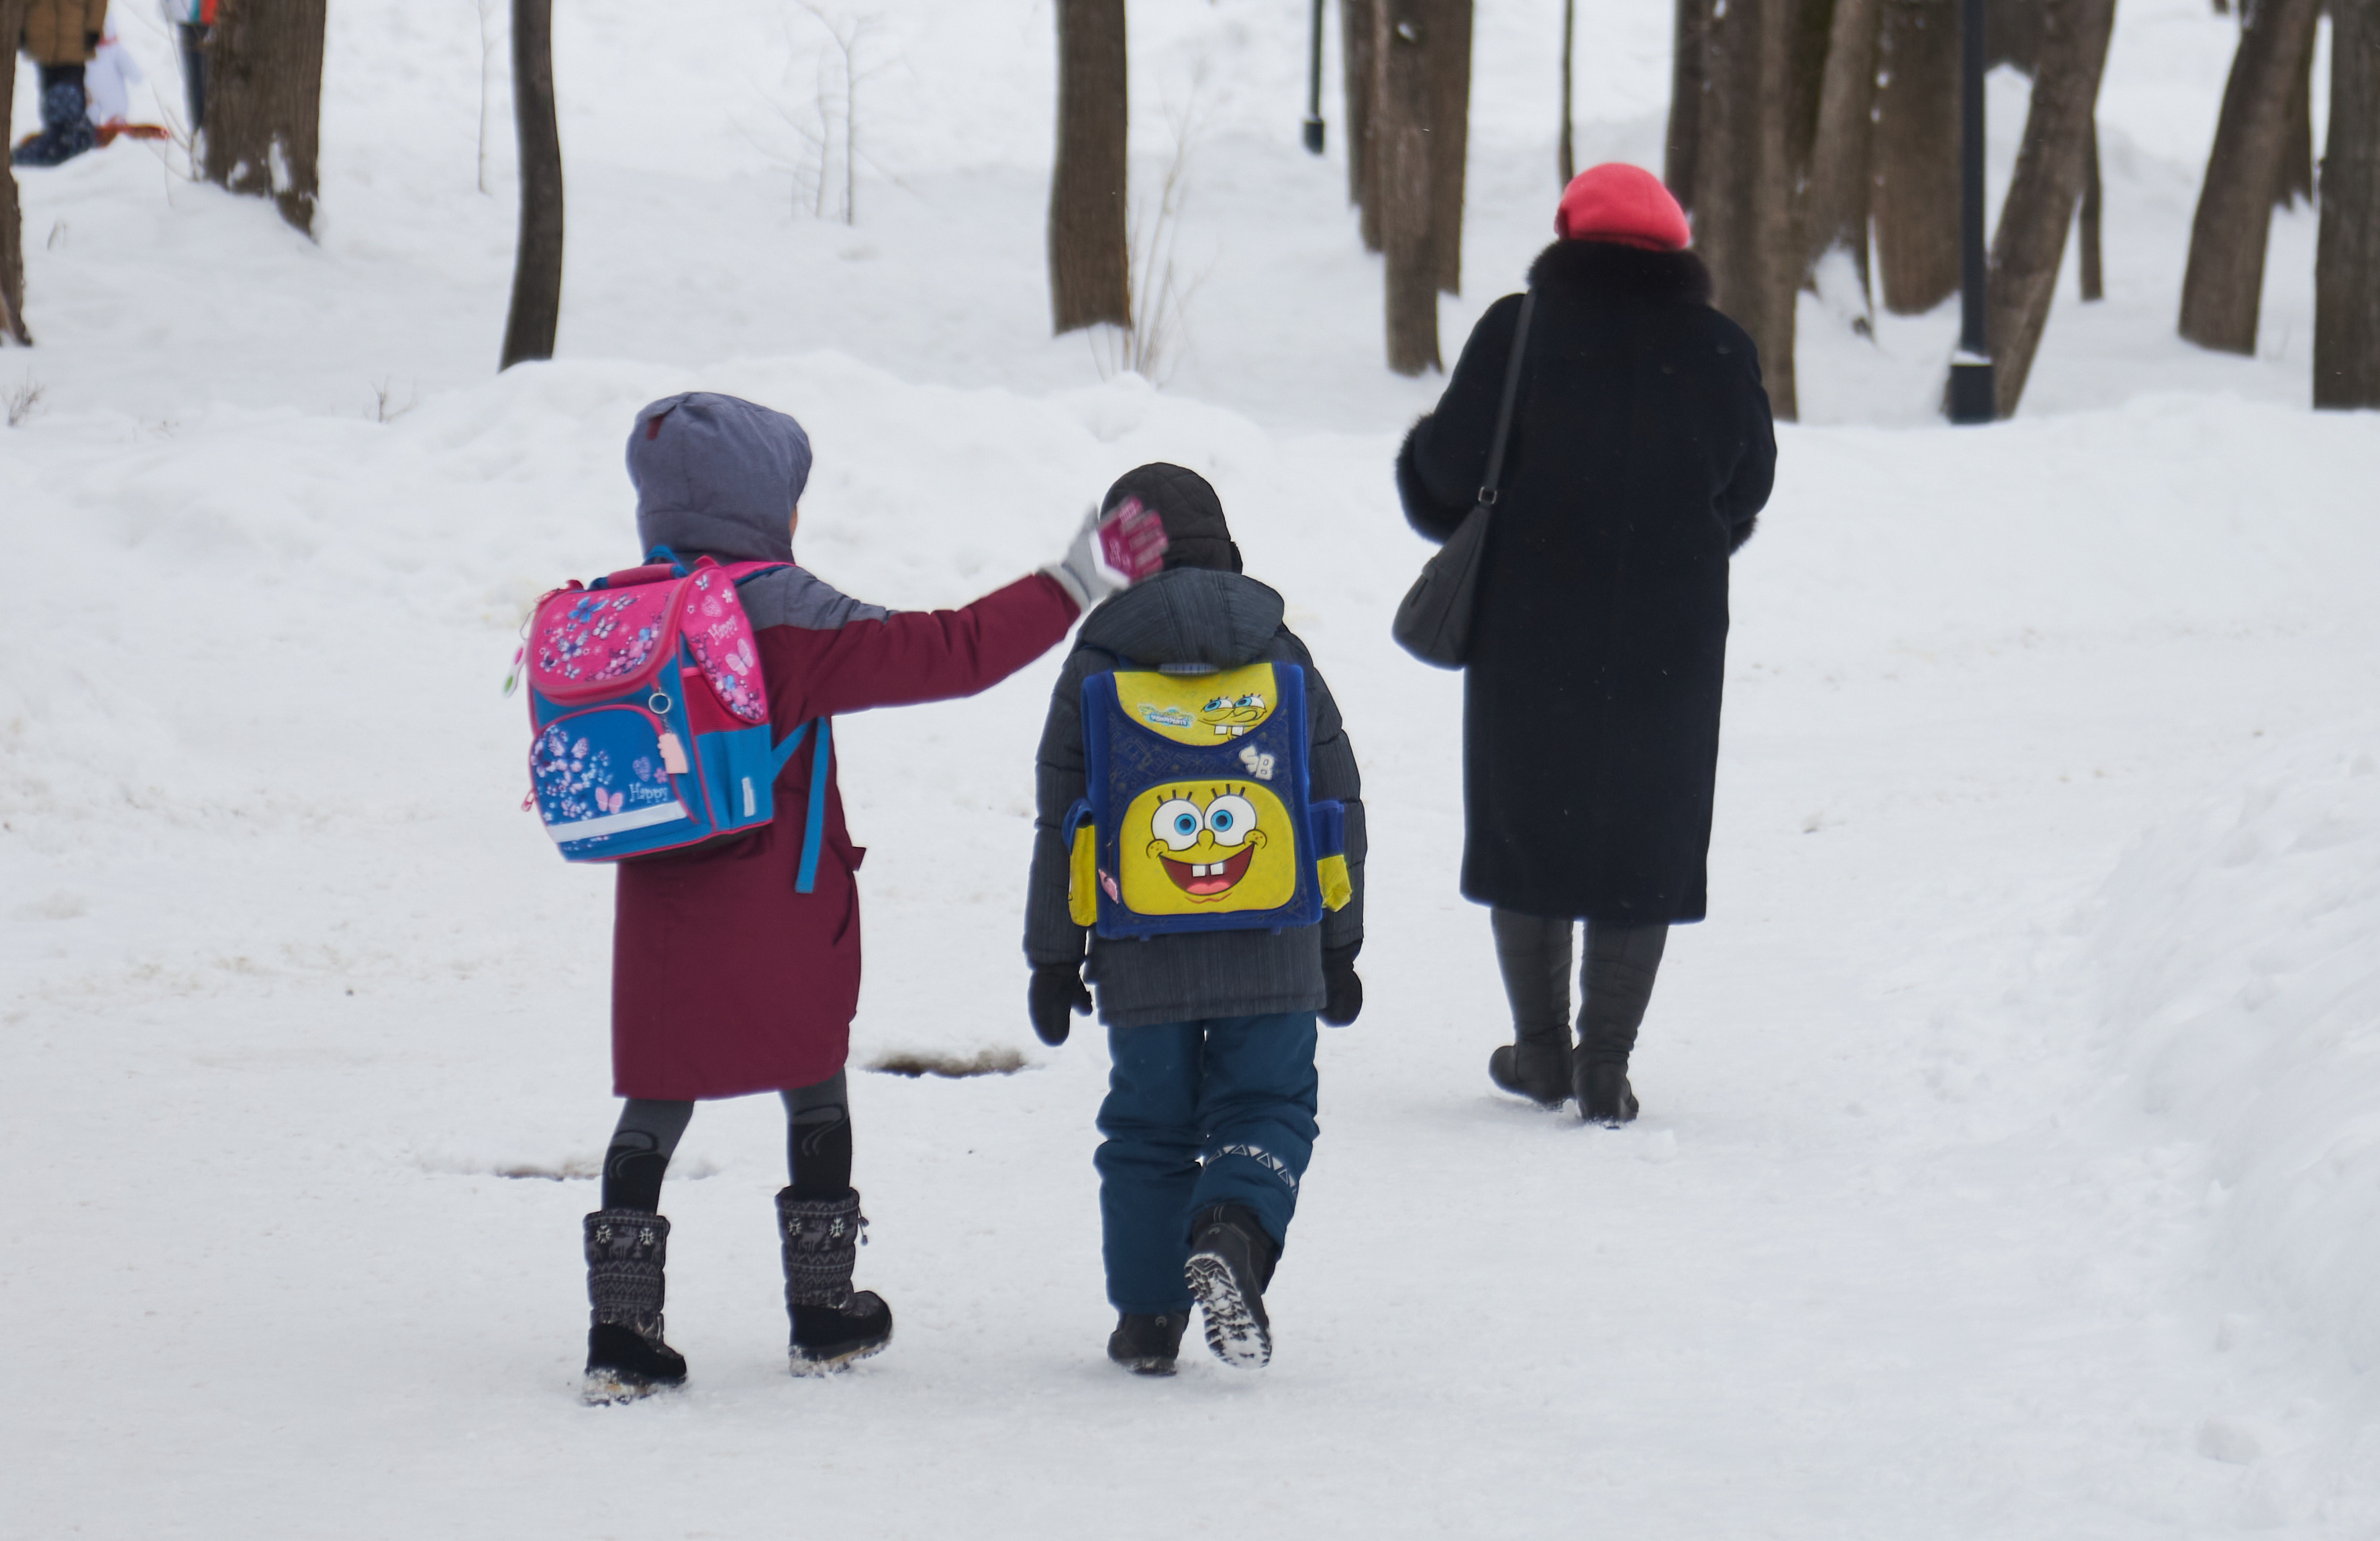 Отменили ли каникулы. Дети идут в школу в Мороз. Дети идут 12 января. Каникулы из за Морозов. Дети идут в школу в сильный Мороз.